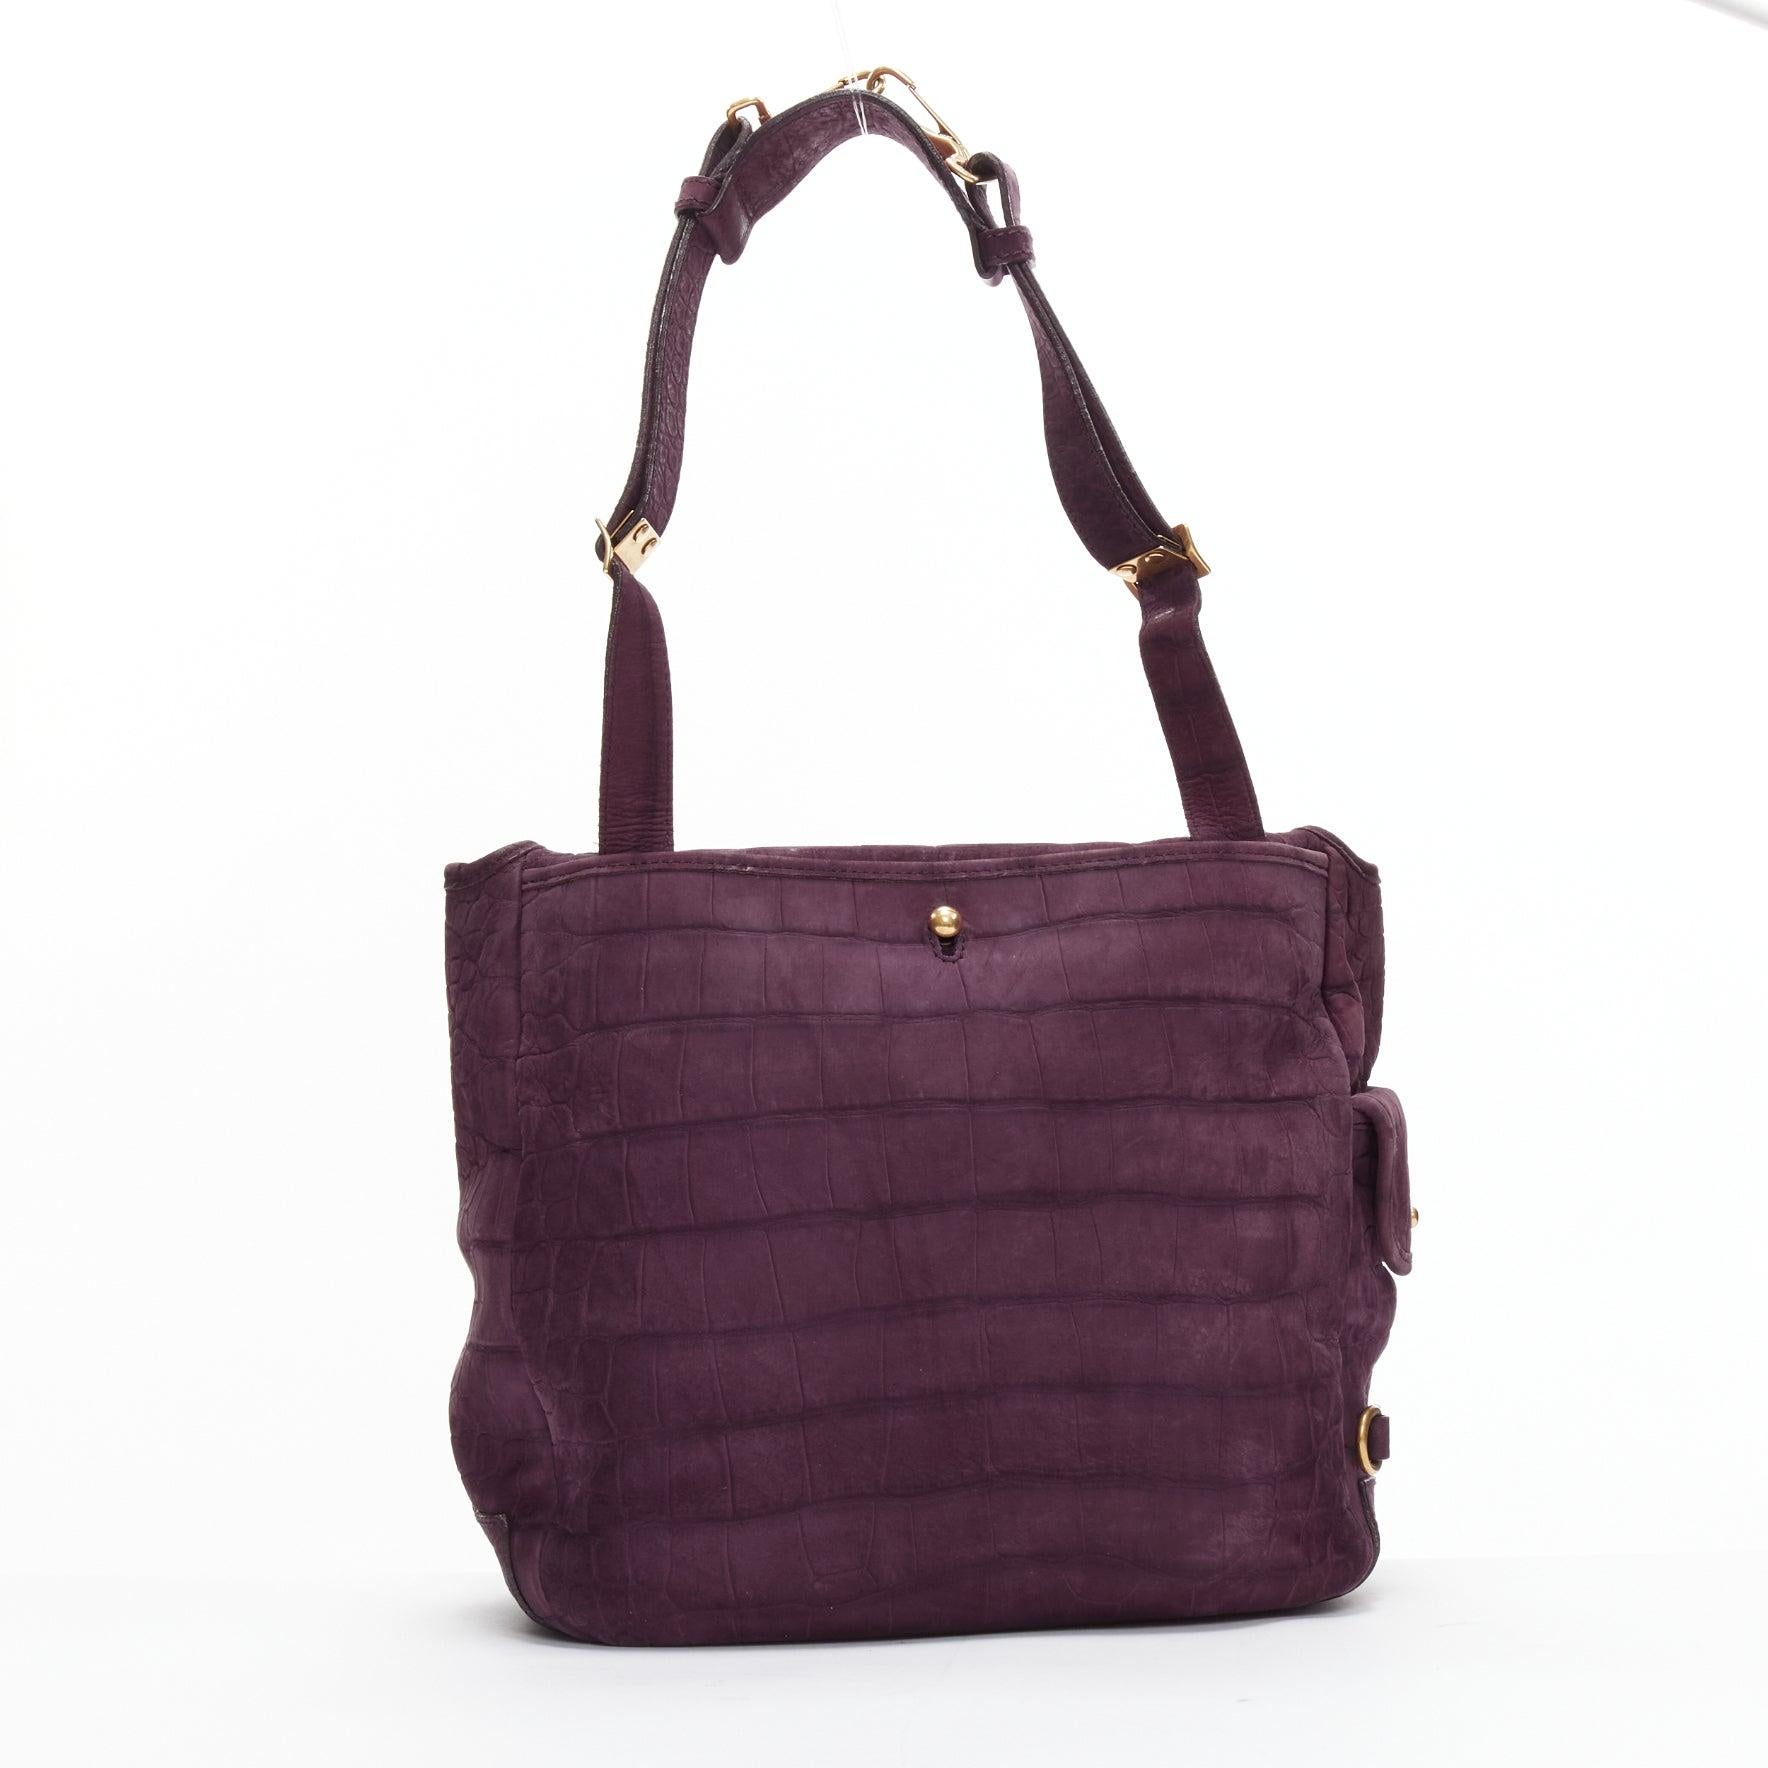 YVES SAINT LAURENT Rive Gauche Besace purple matte leather messenger bag 2